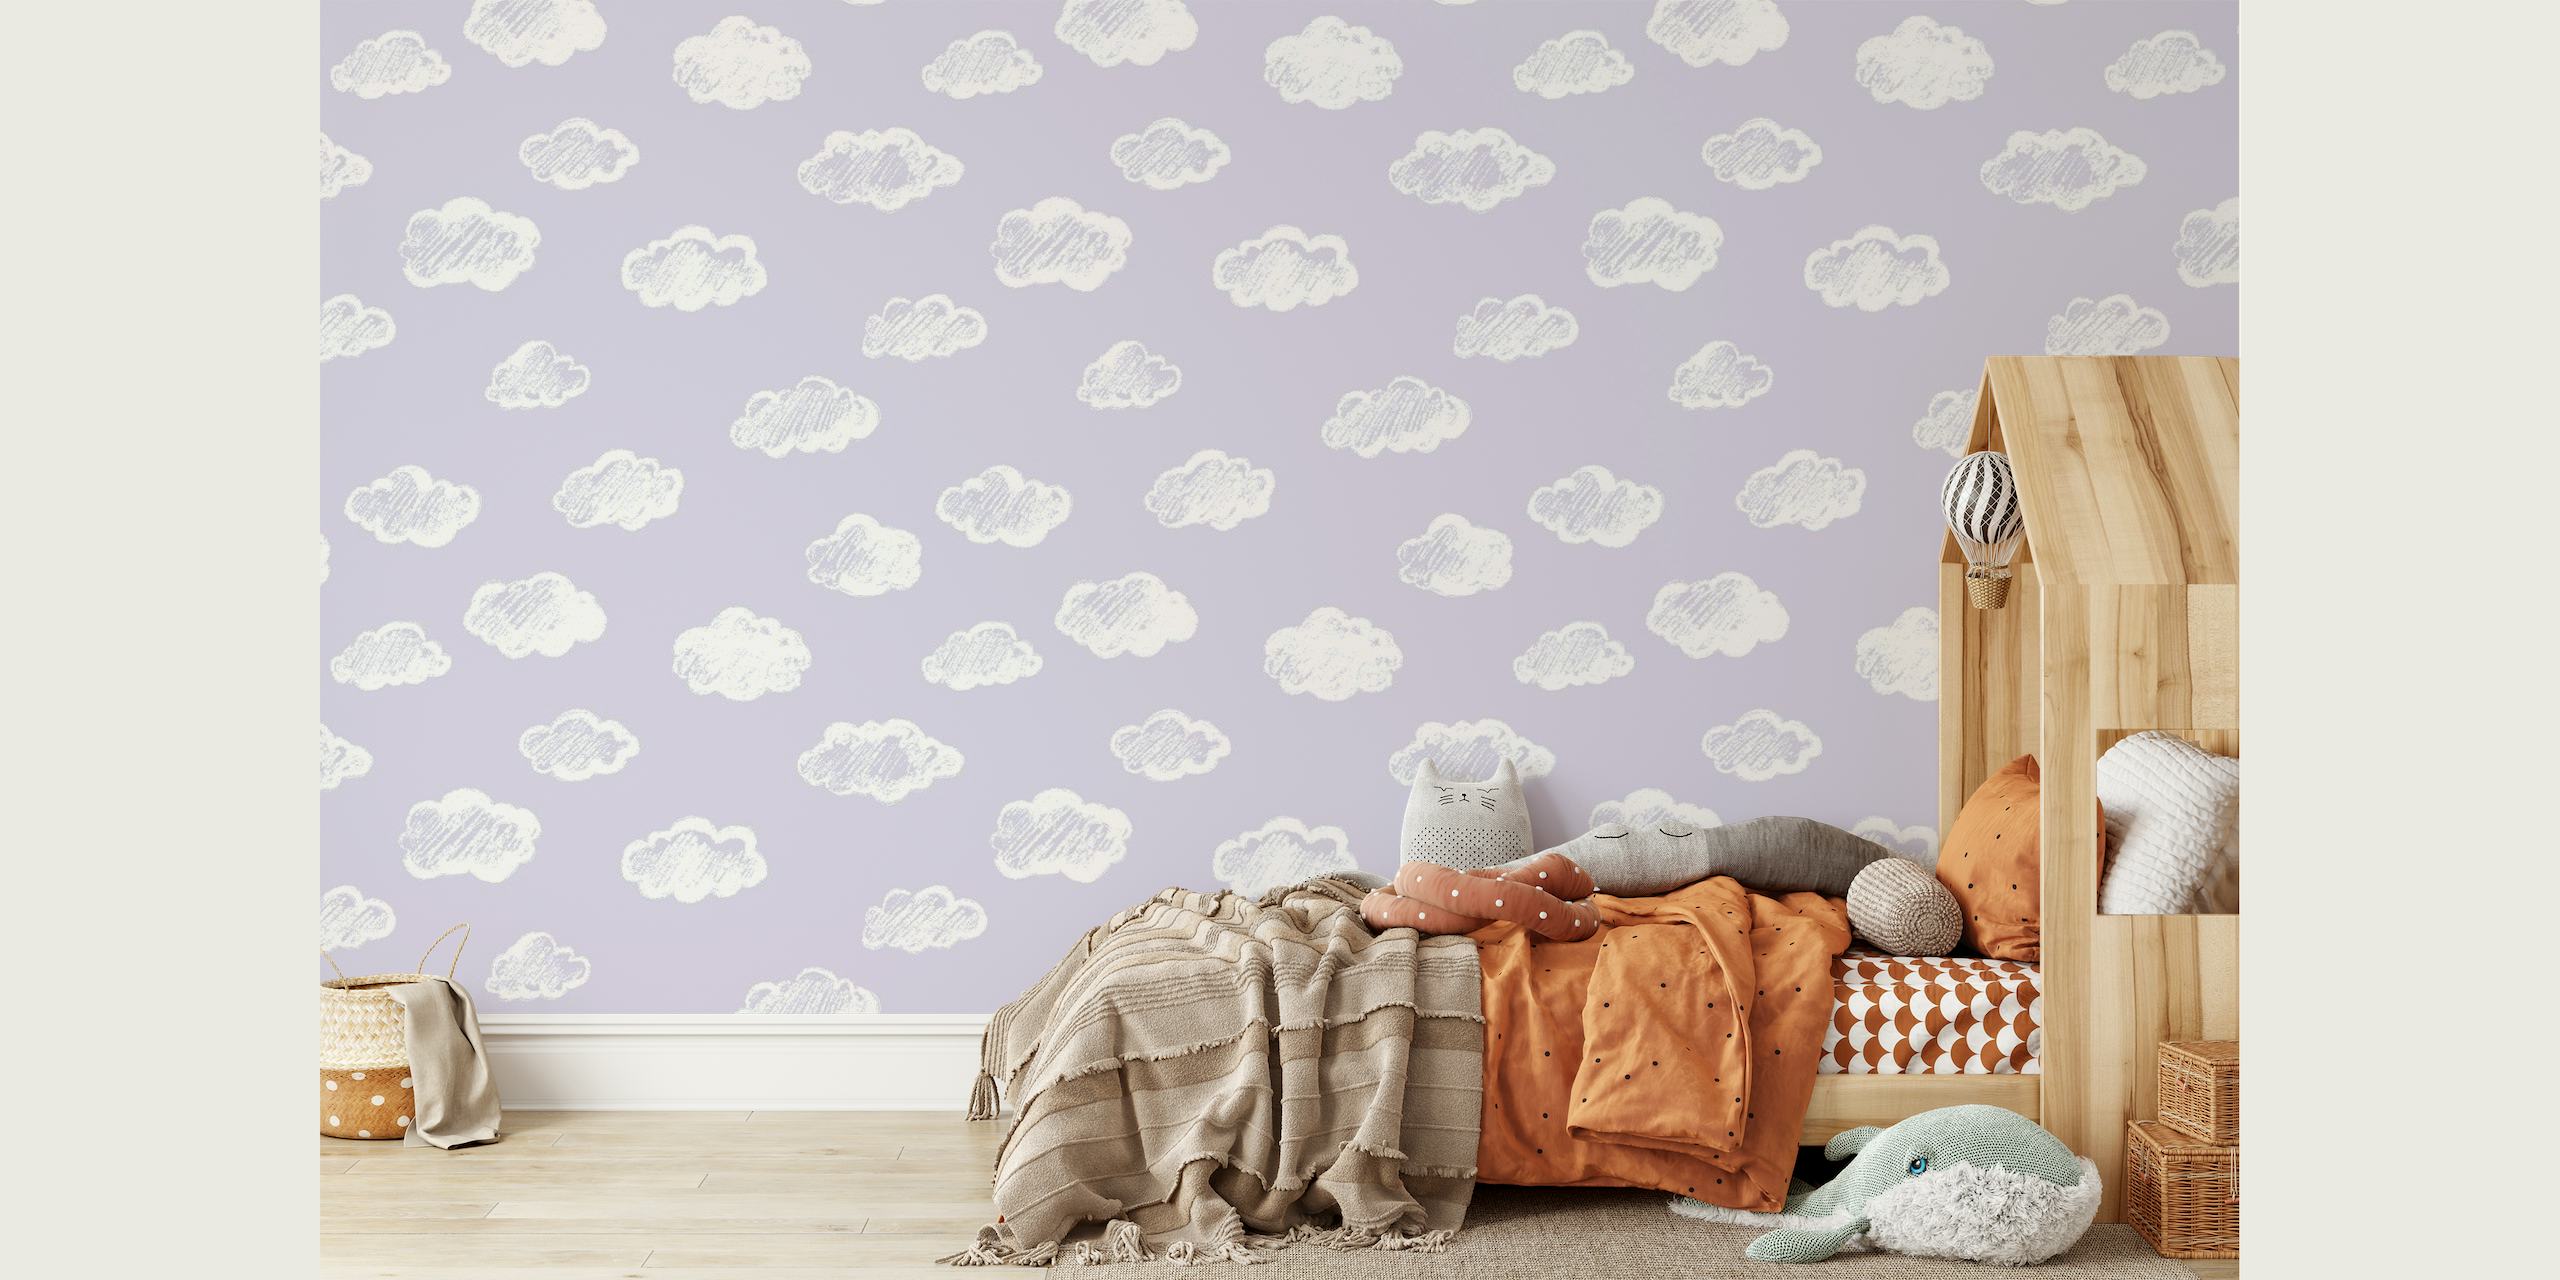 Krijtachtige witte wolken op een zachte lavendelkleurige muurschildering als achtergrond